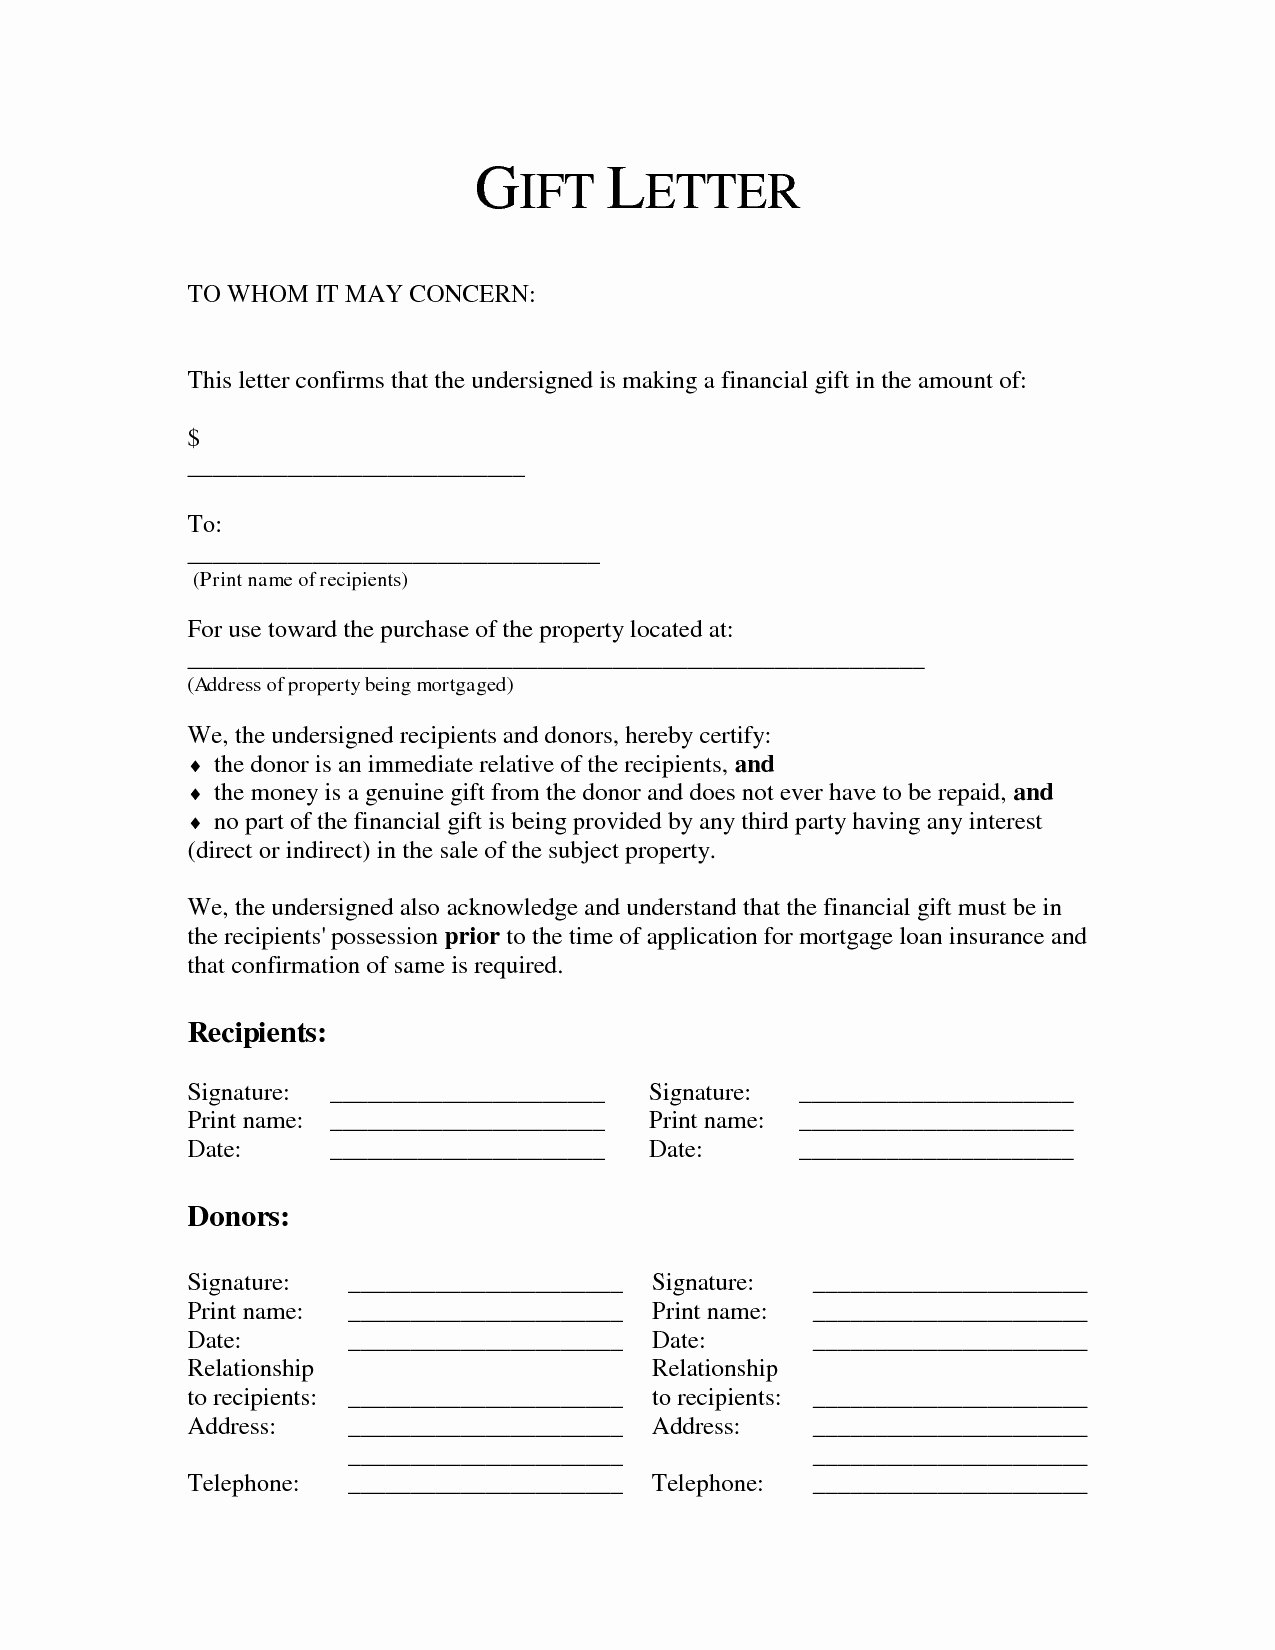 Fha Gift Letter Template Lovely Gift Letter for Mortgage